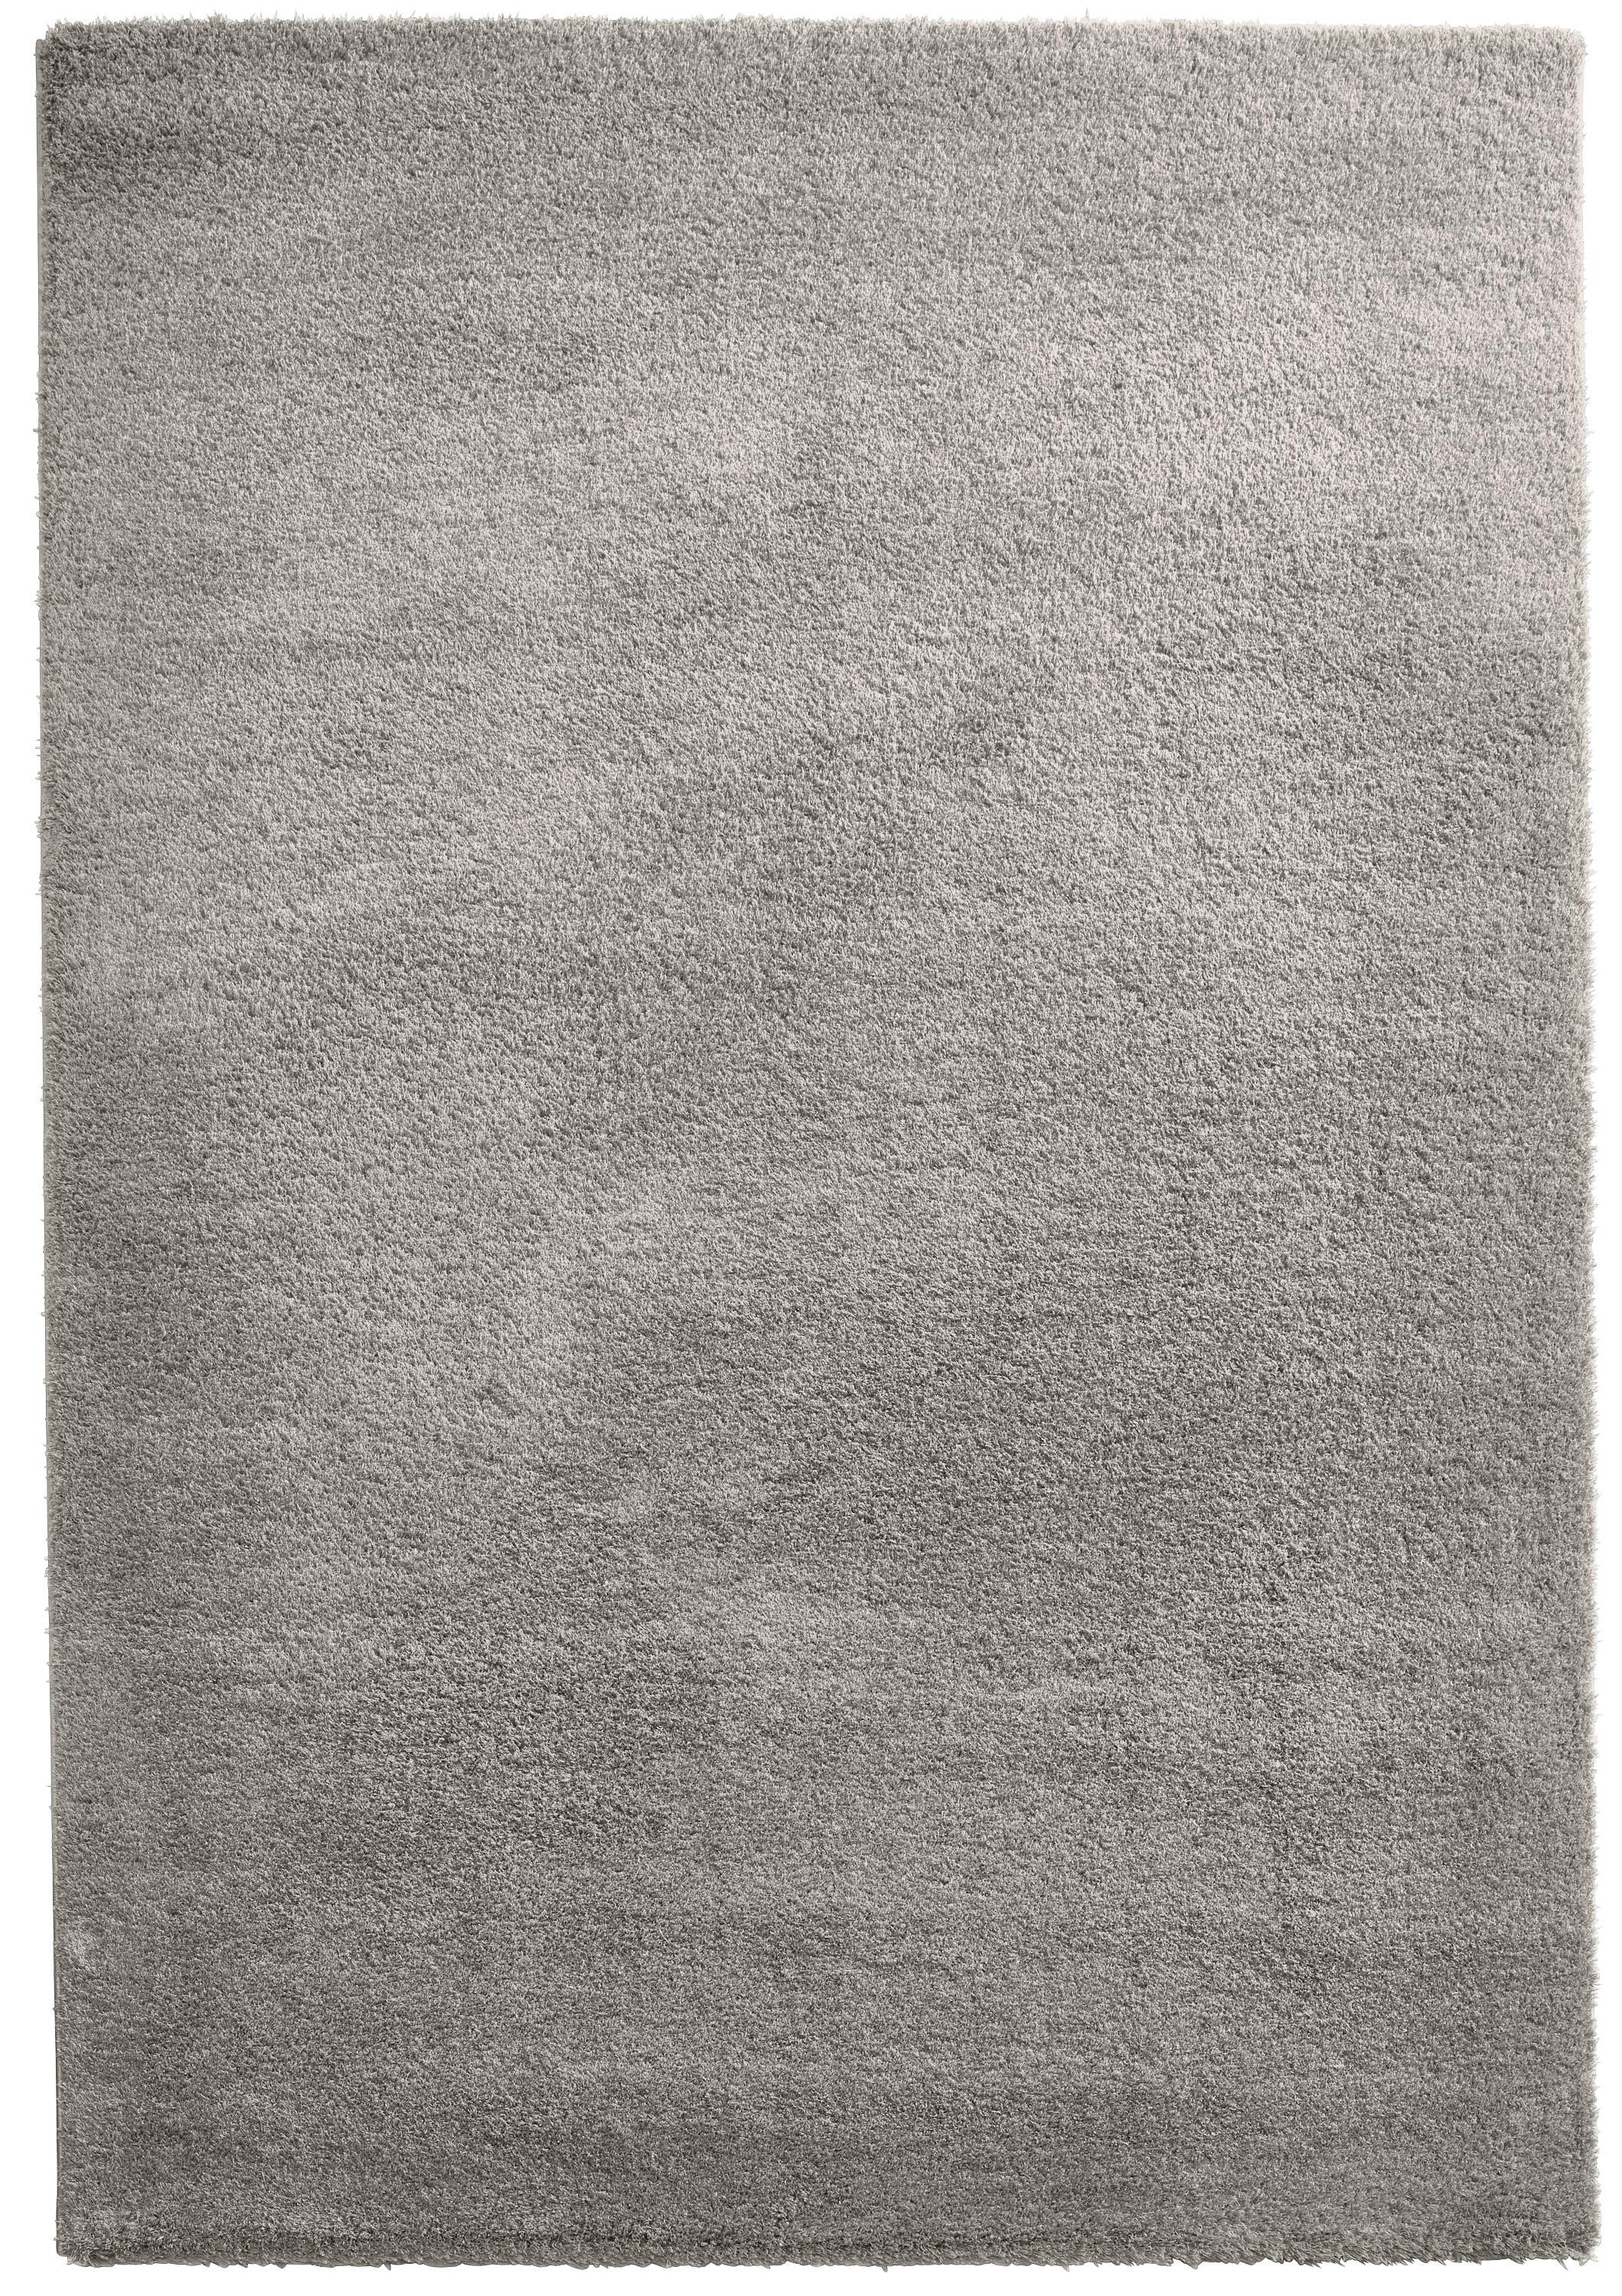 Covor Shaggy Stefan 3 - gri deschis, Modern, textil (160/230cm) - Modern Living